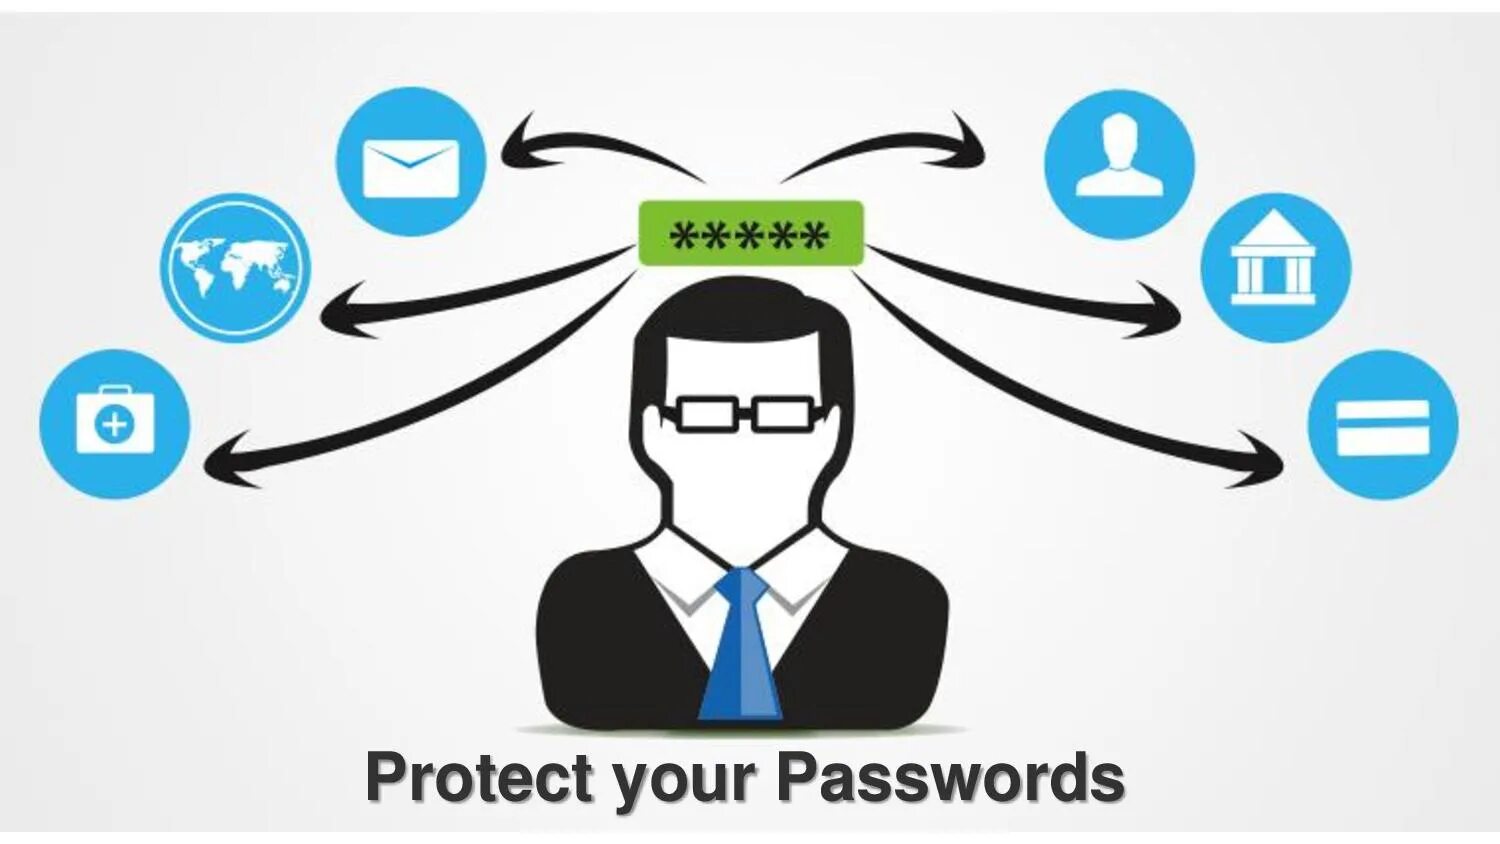 Users ways. Защита с использованием паролей. Защита пароля картинка. Пароль иллюстрация. Надежный пароль картинки.